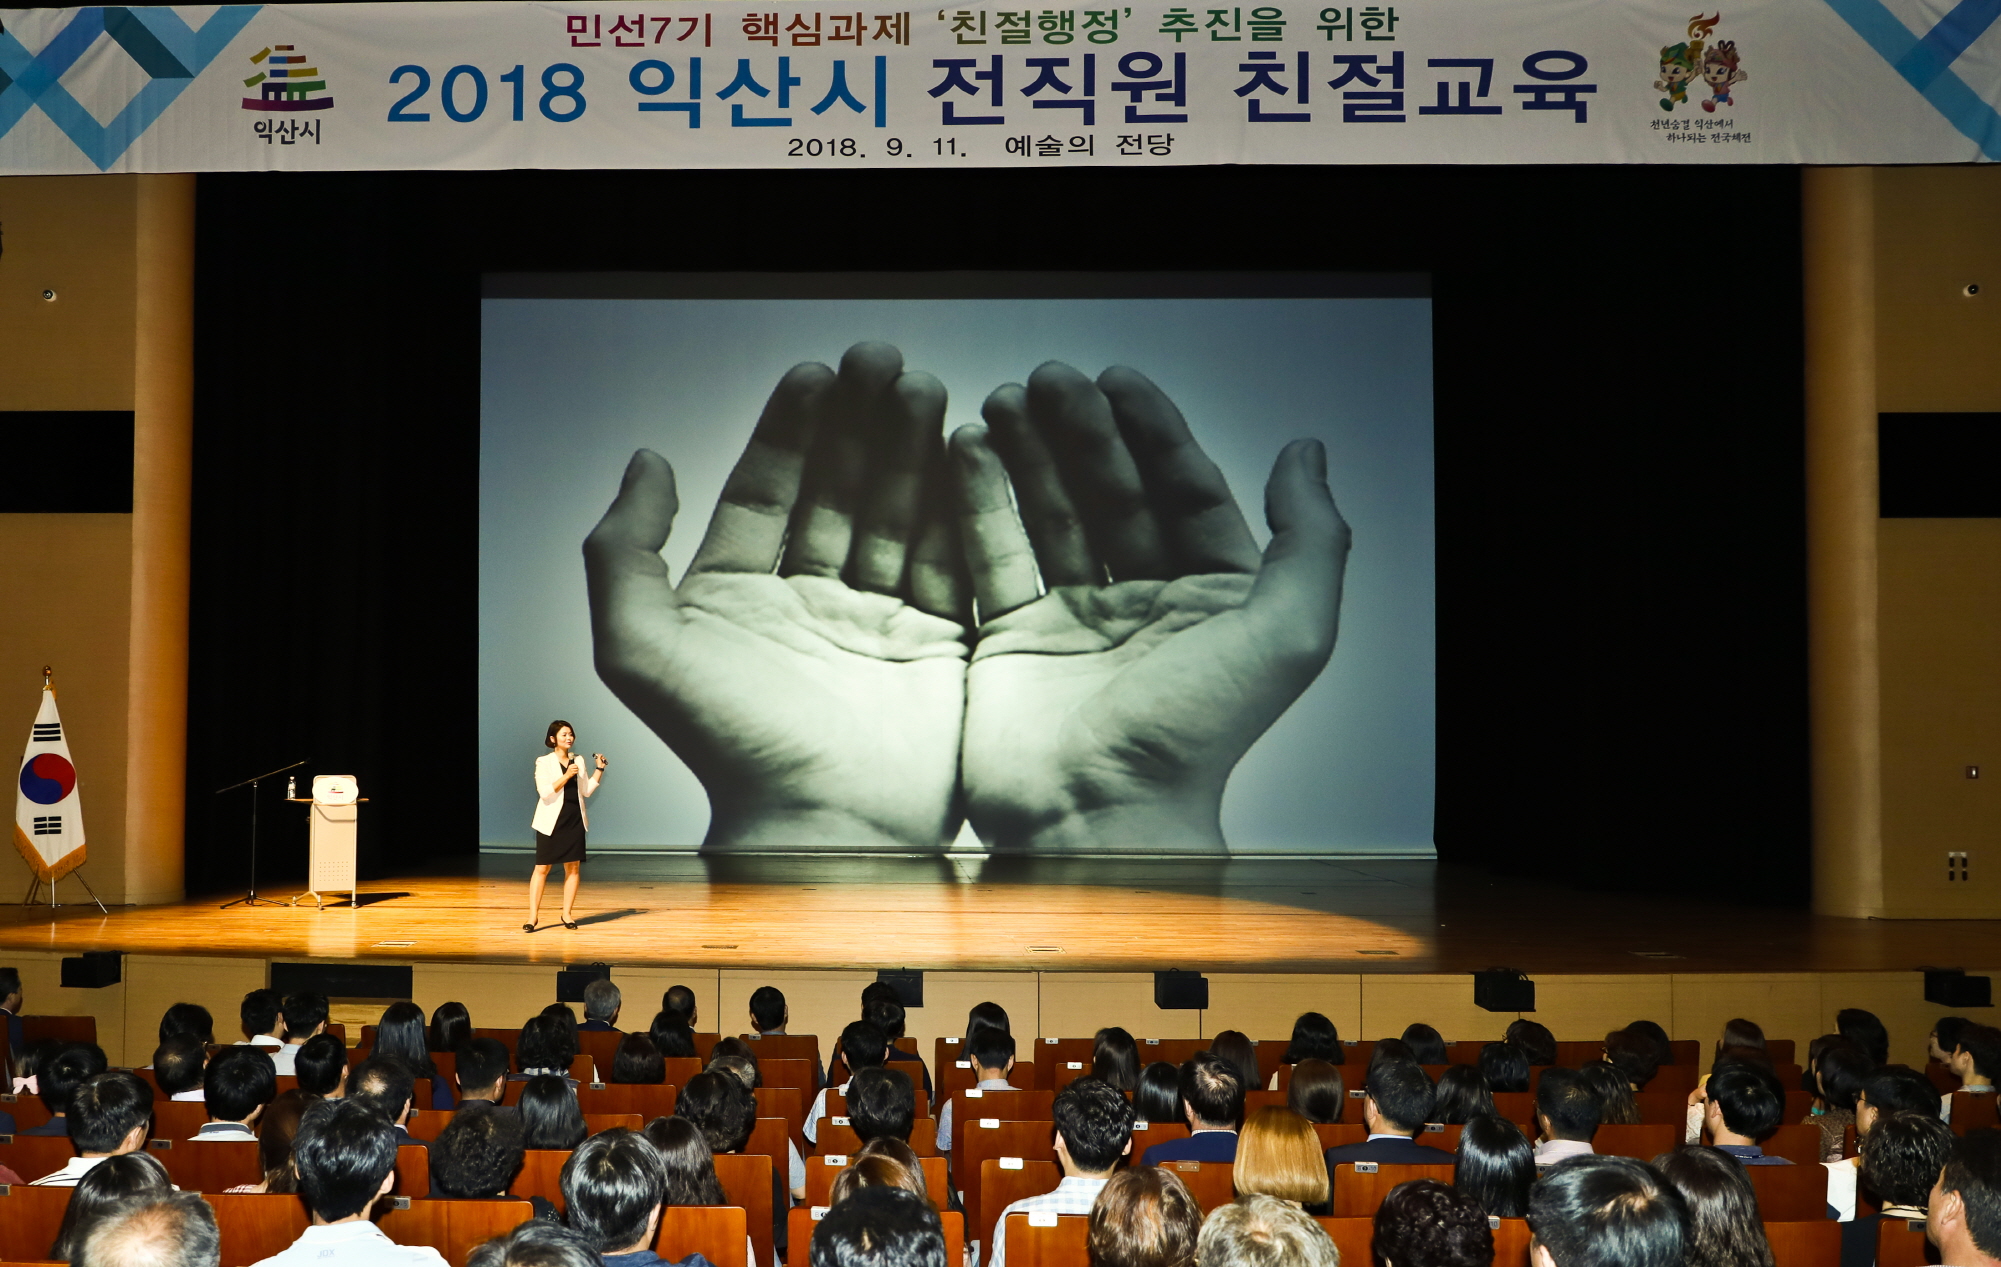 9월11일  민선7기 핵심과제 '친절행정' 추진을 위한 2018년 전직원 친절교육